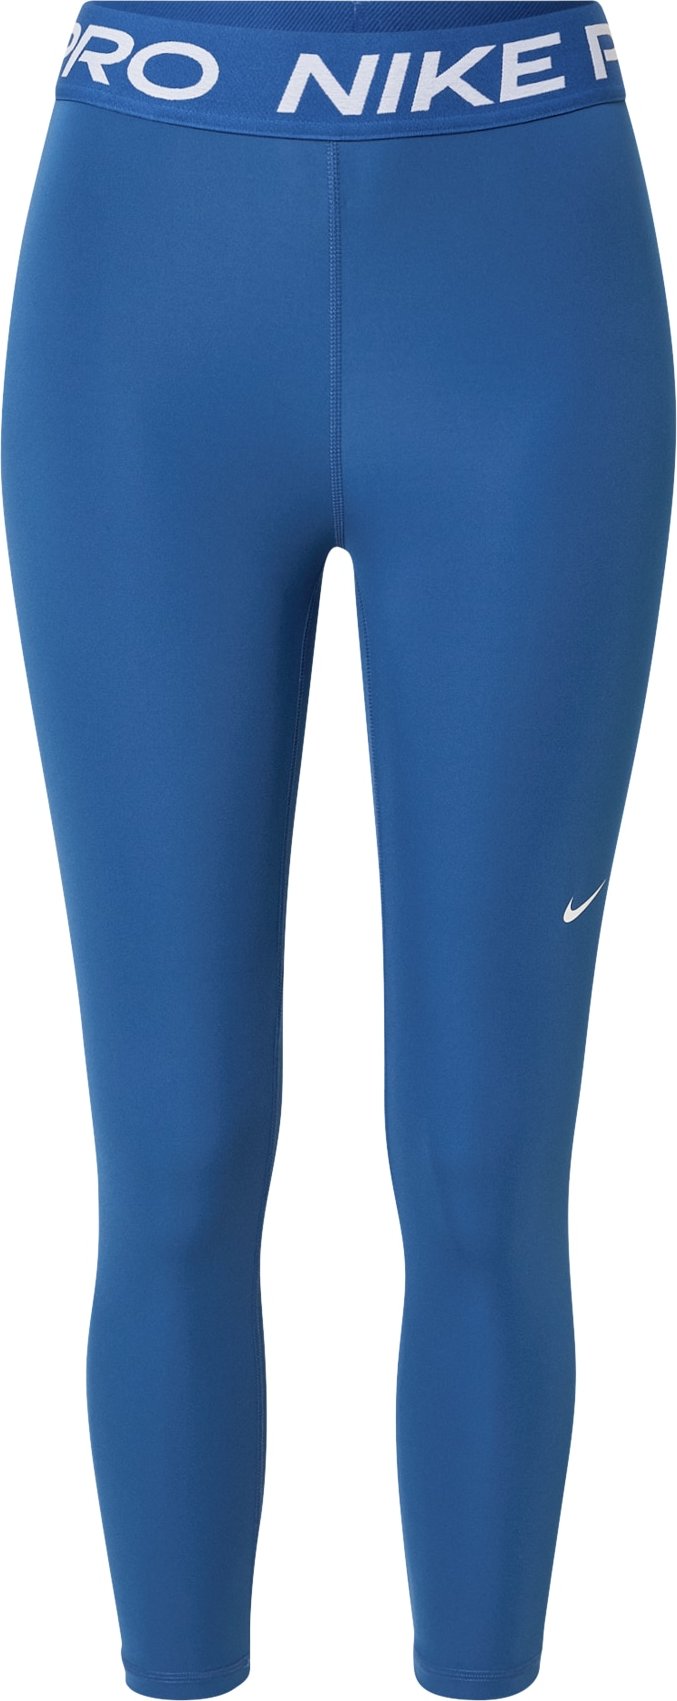 NIKE Sportovní kalhoty kobaltová modř / bílá